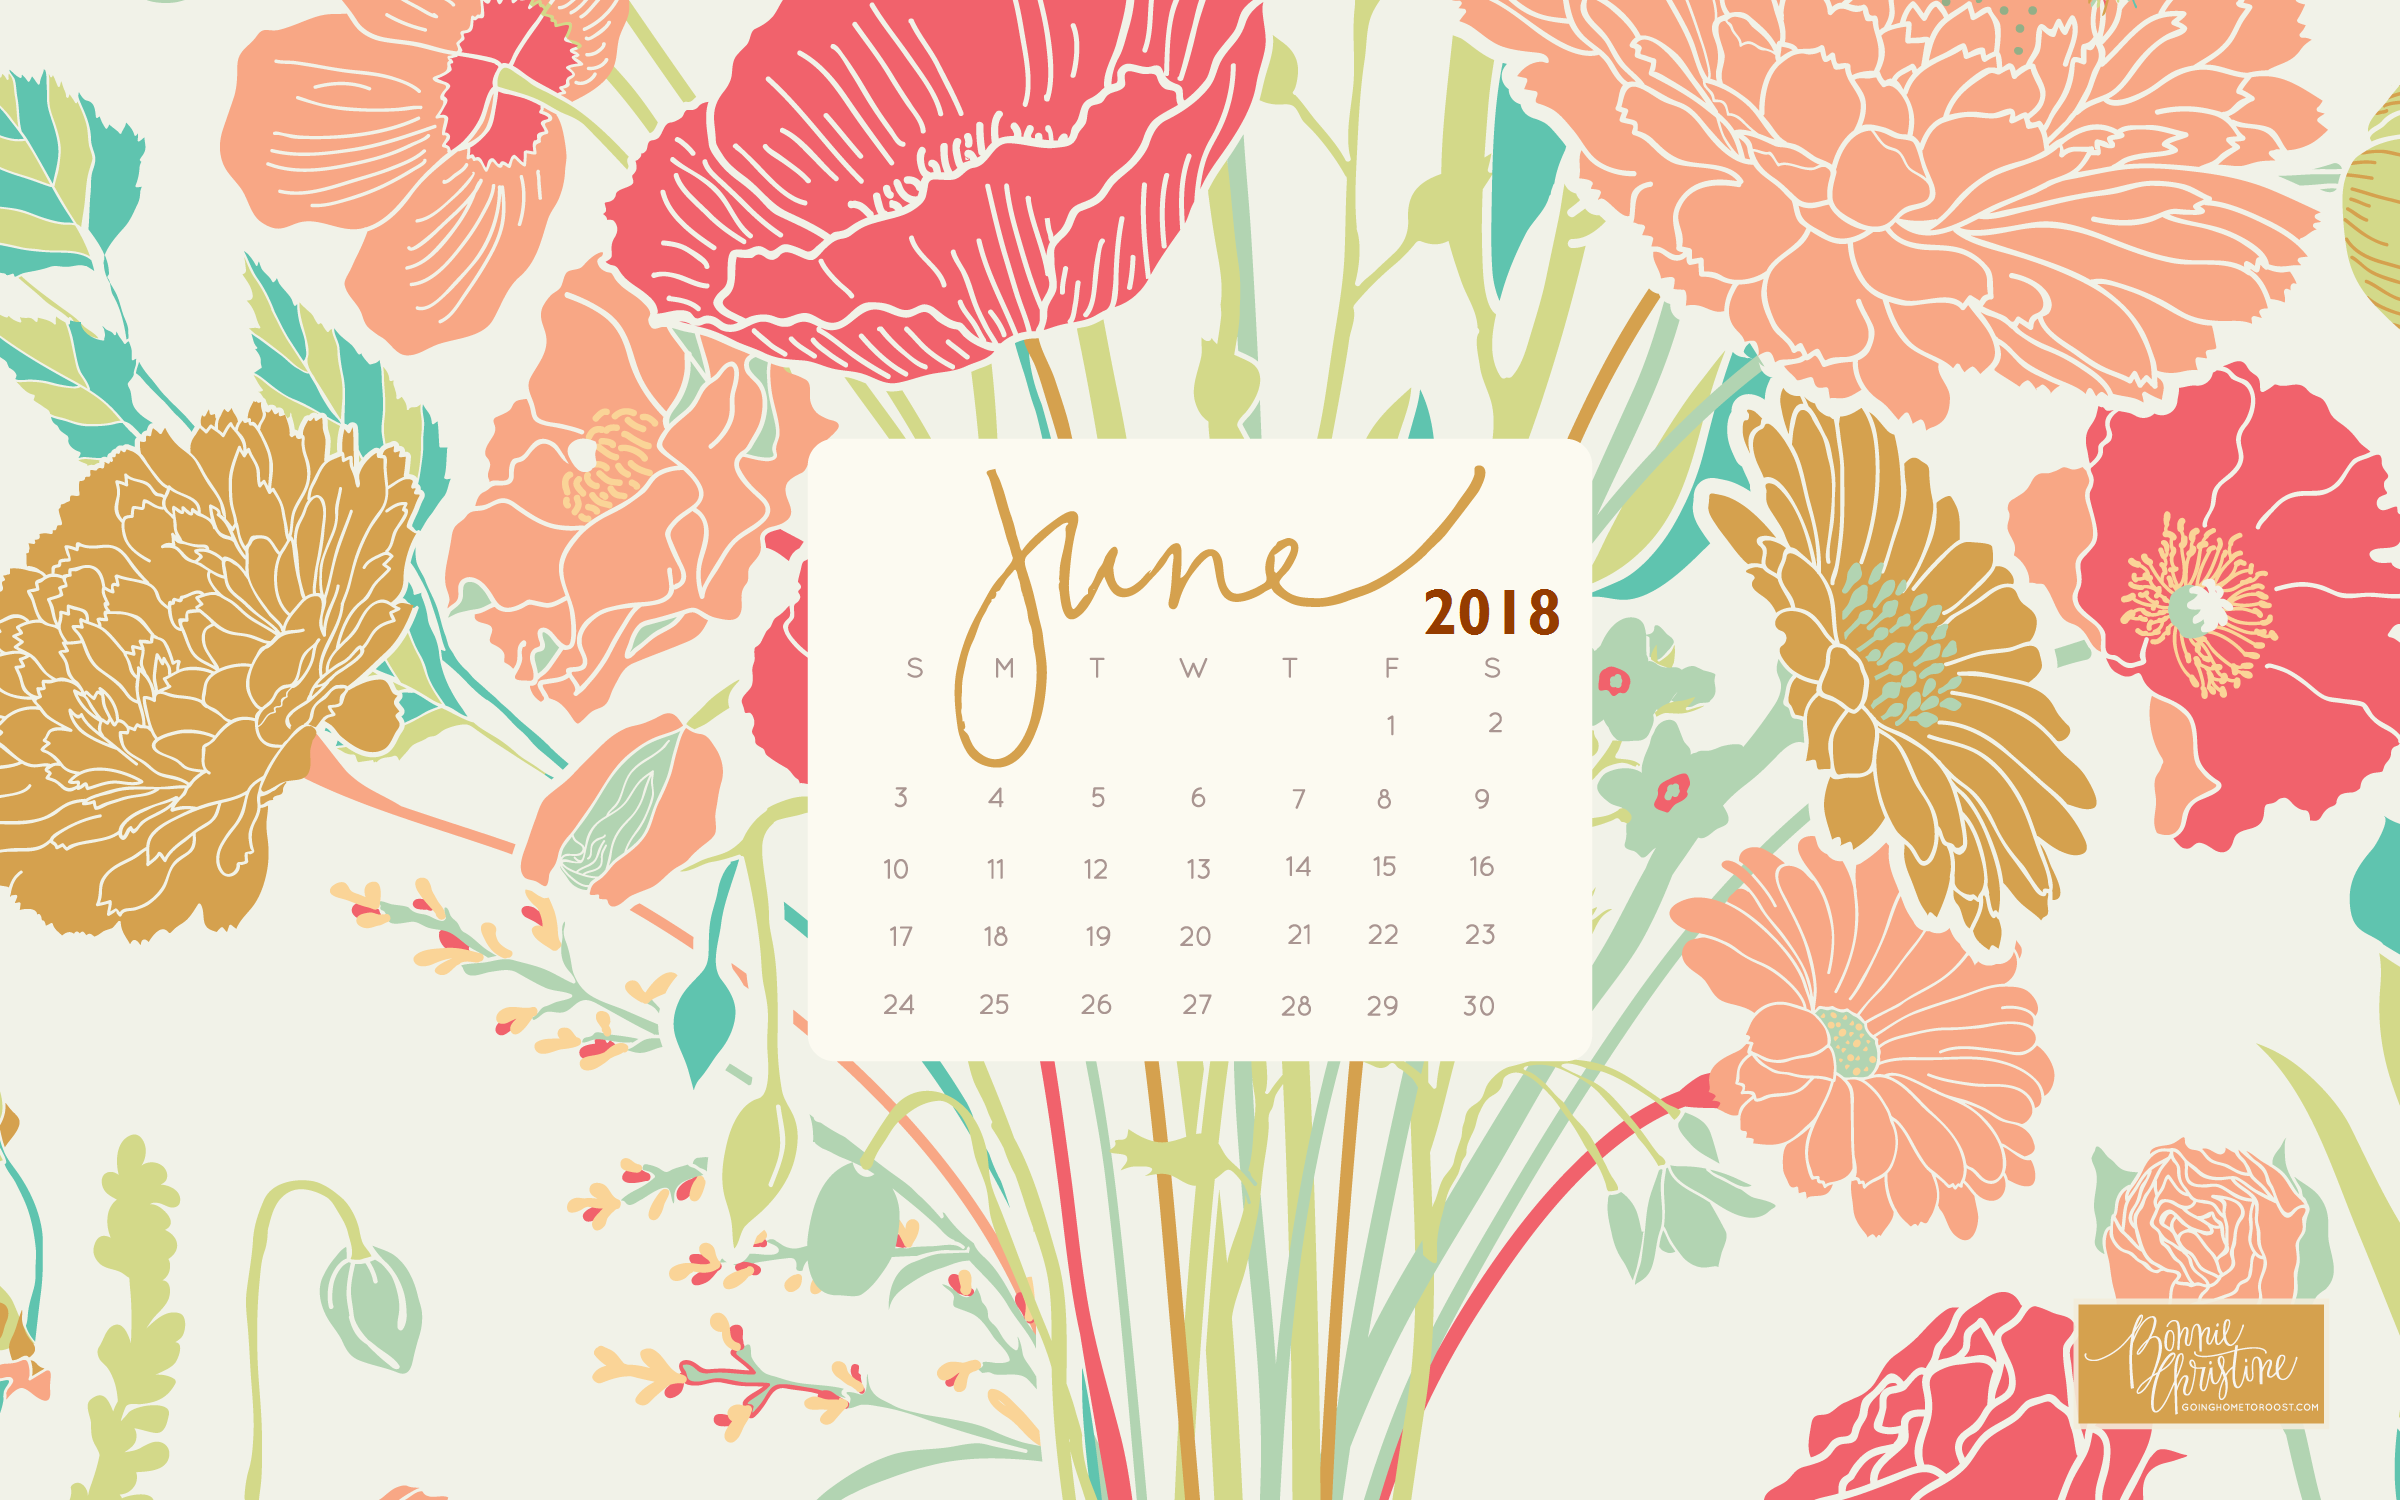  35 June 2018 Calendar Wallpapers WallpaperSafari